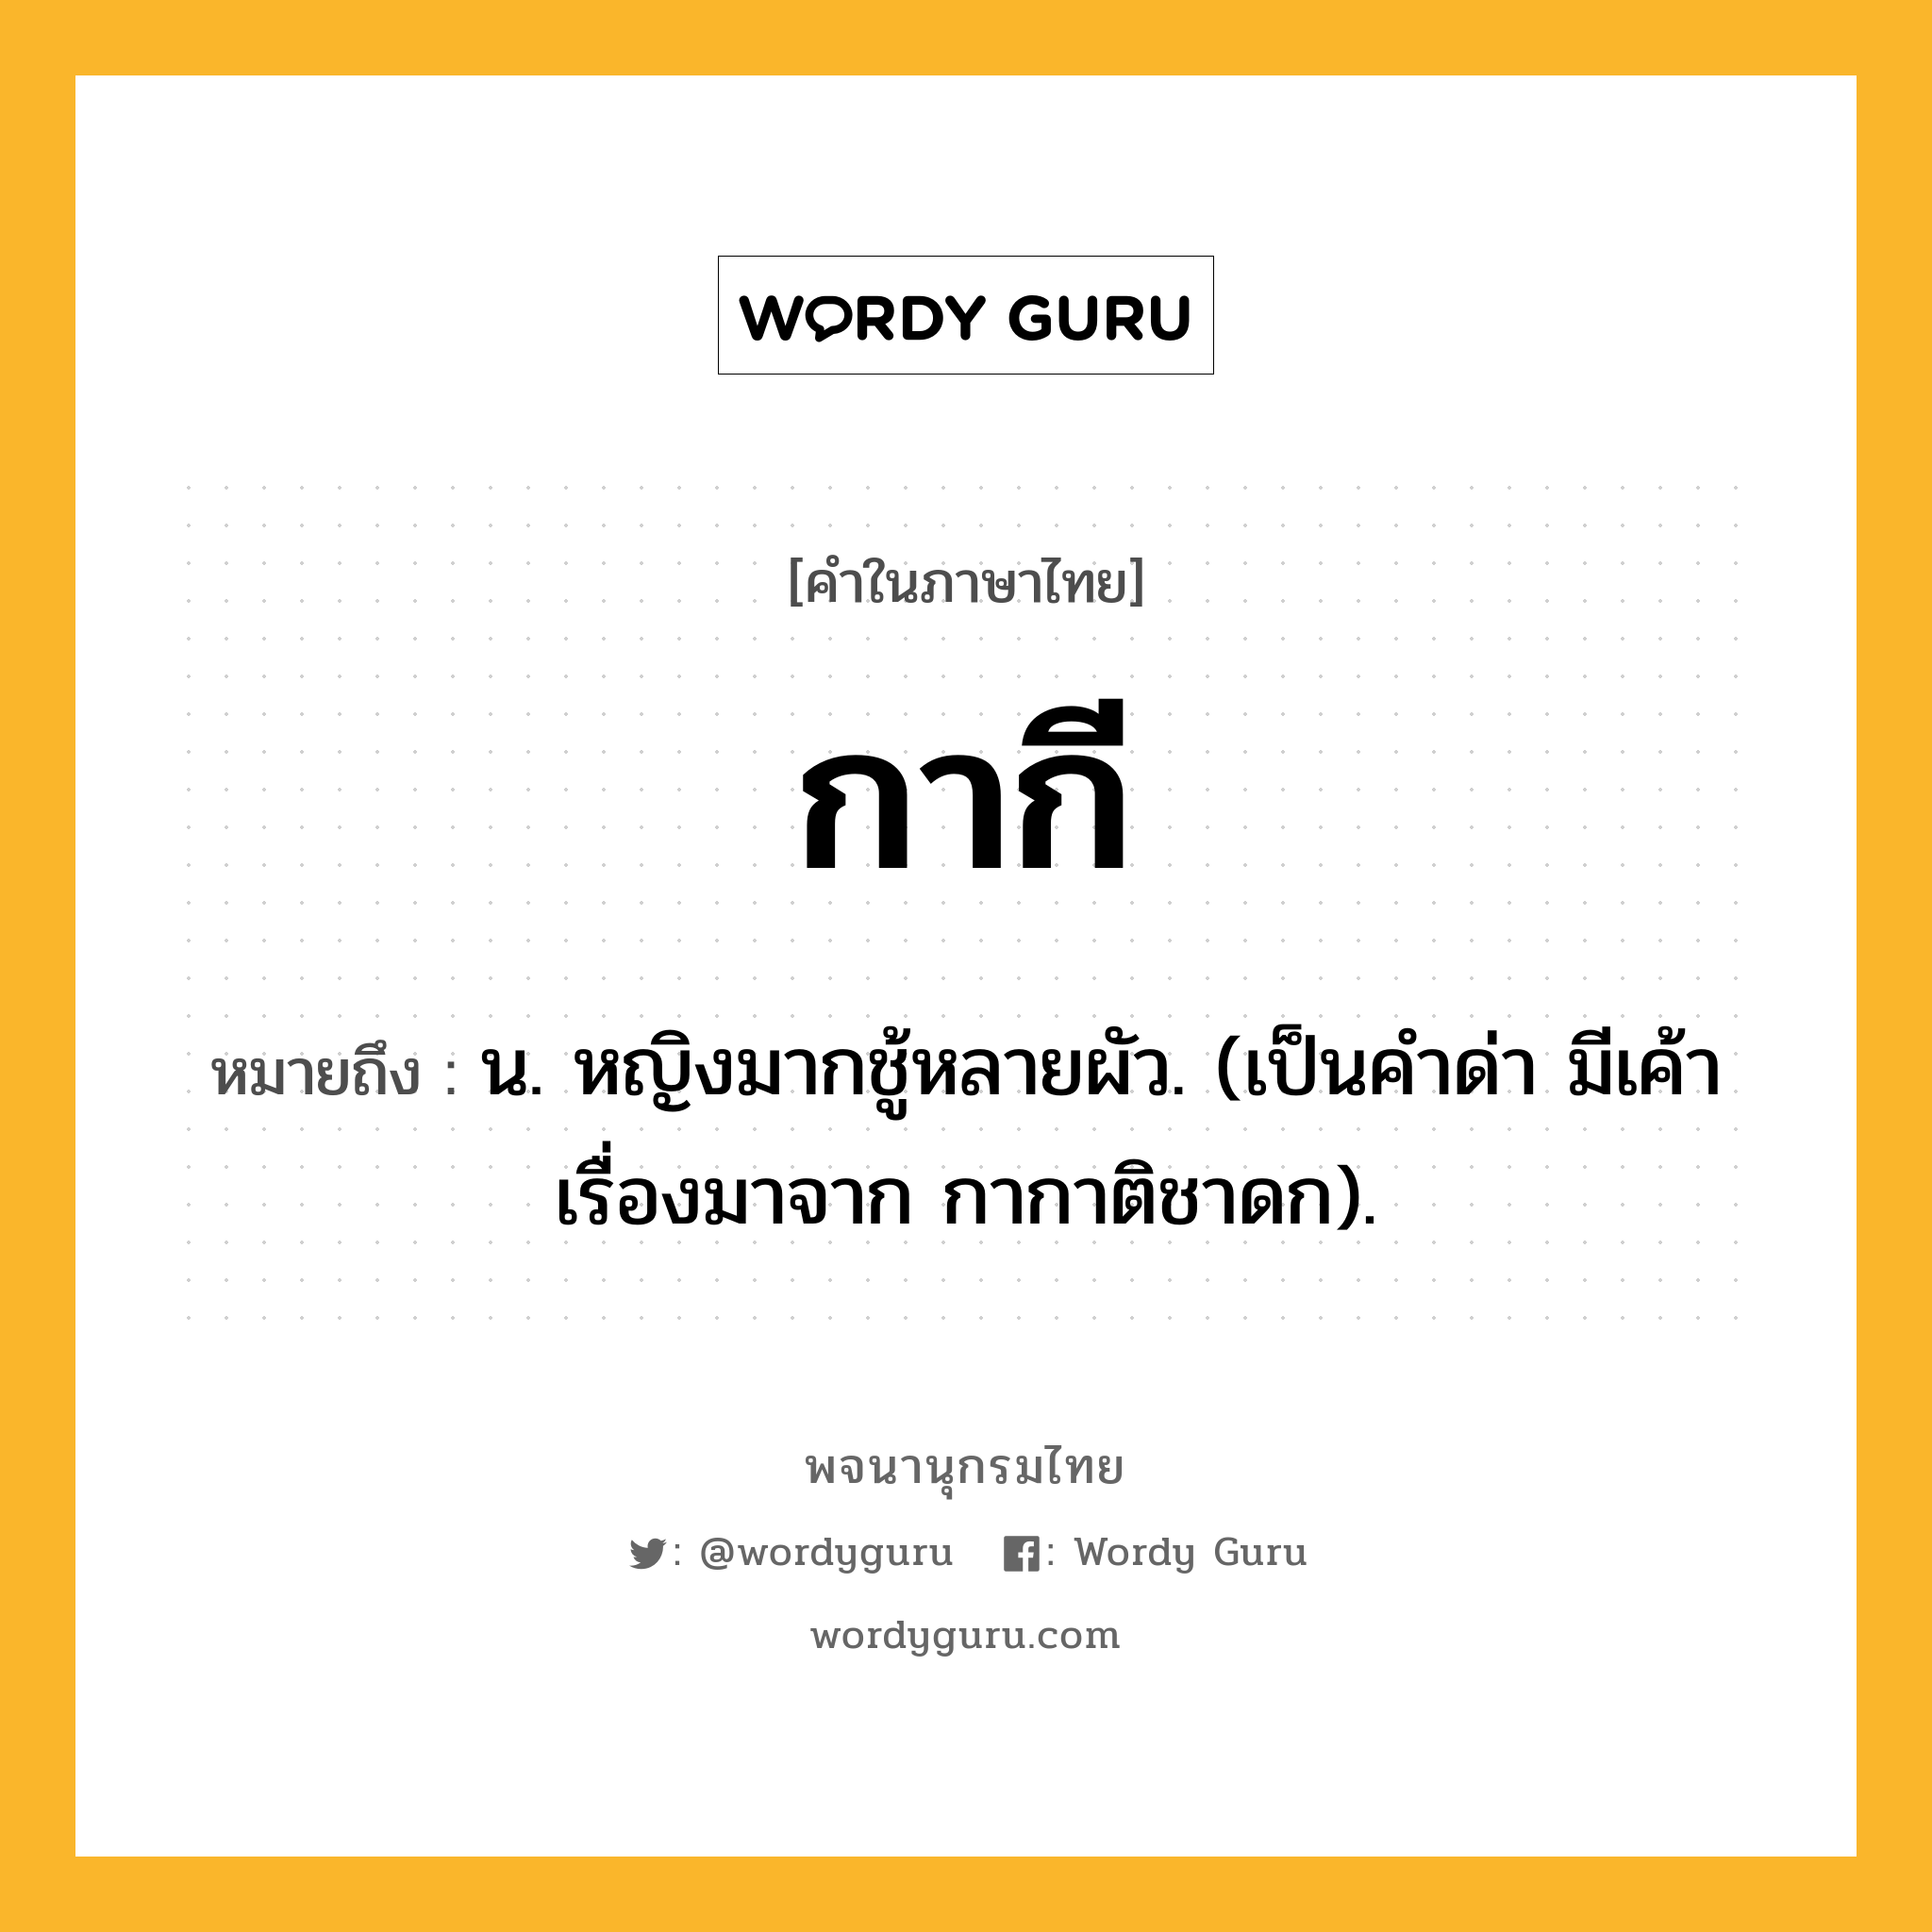 กากี ความหมาย หมายถึงอะไร?, คำในภาษาไทย กากี หมายถึง น. หญิงมากชู้หลายผัว. (เป็นคําด่า มีเค้าเรื่องมาจาก กากาติชาดก).